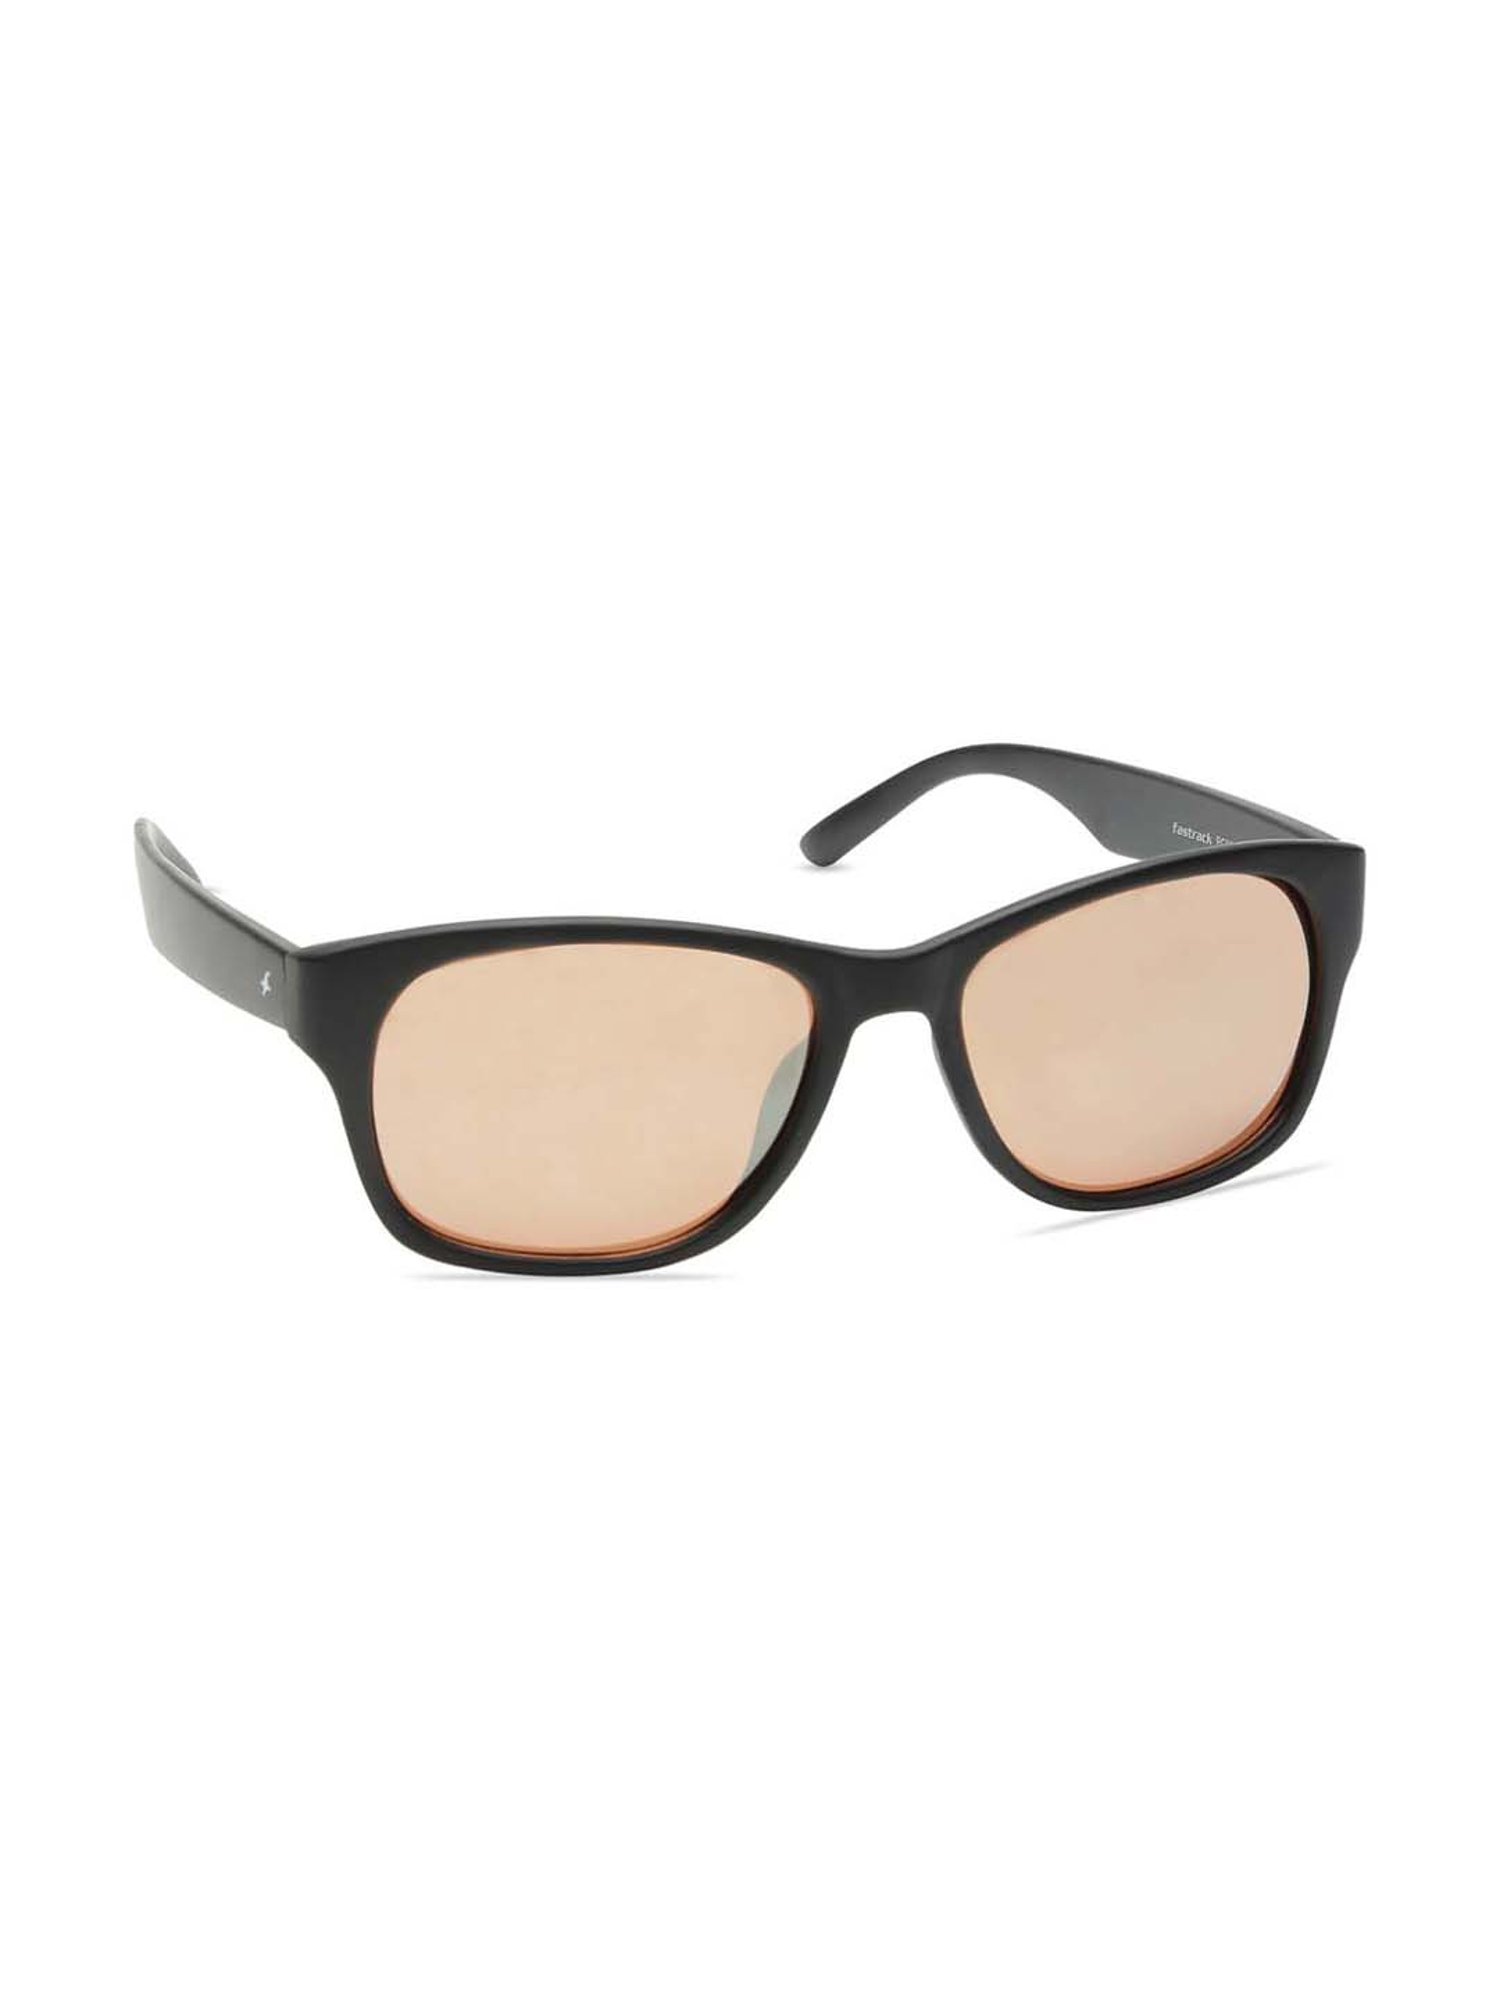 Buy Fastrack Aviator Sunglasses Brown For Men & Women Online @ Best Prices  in India | Flipkart.com